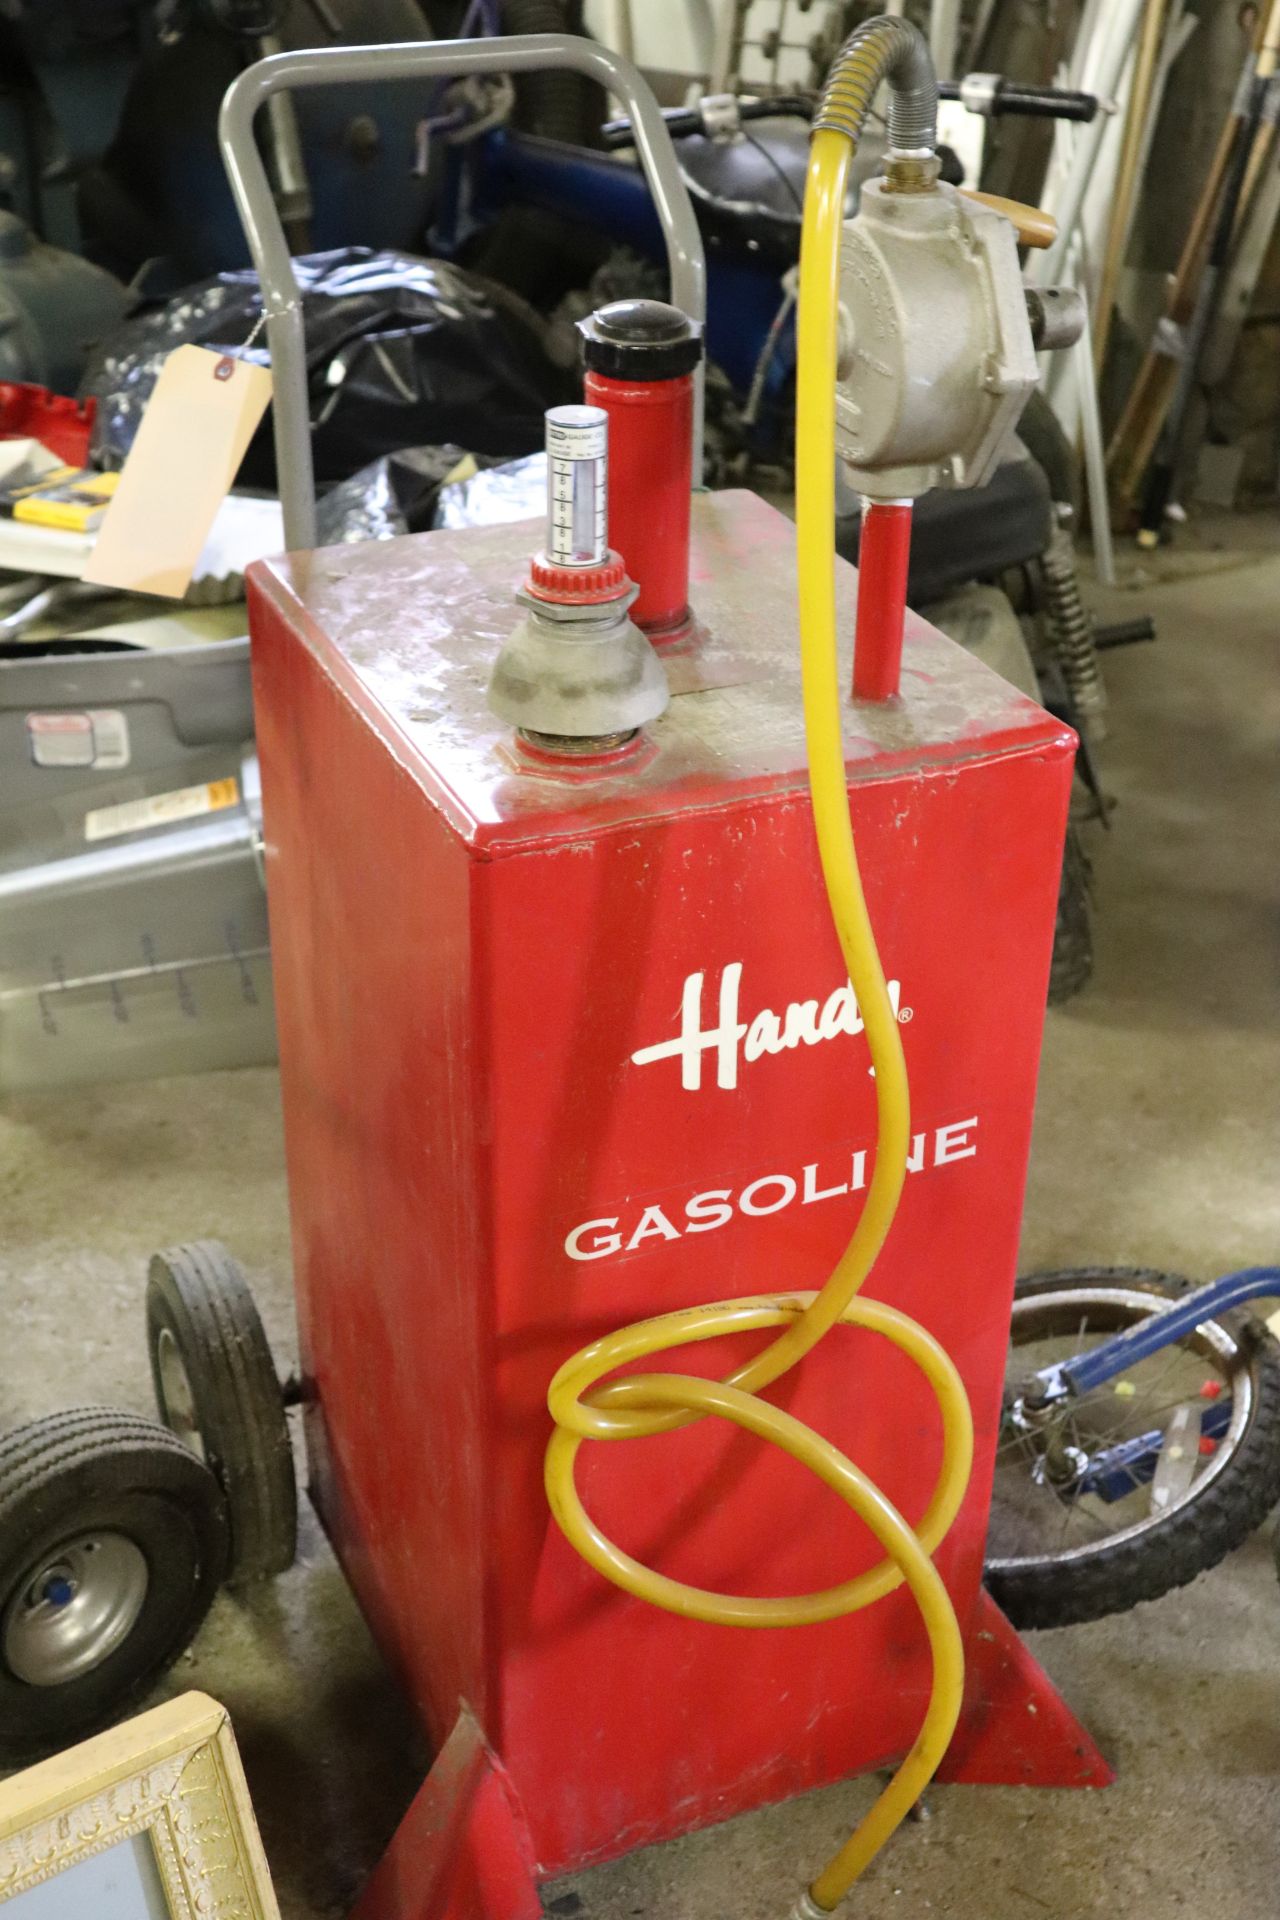 Hardy gasoline dispenser - Image 3 of 3